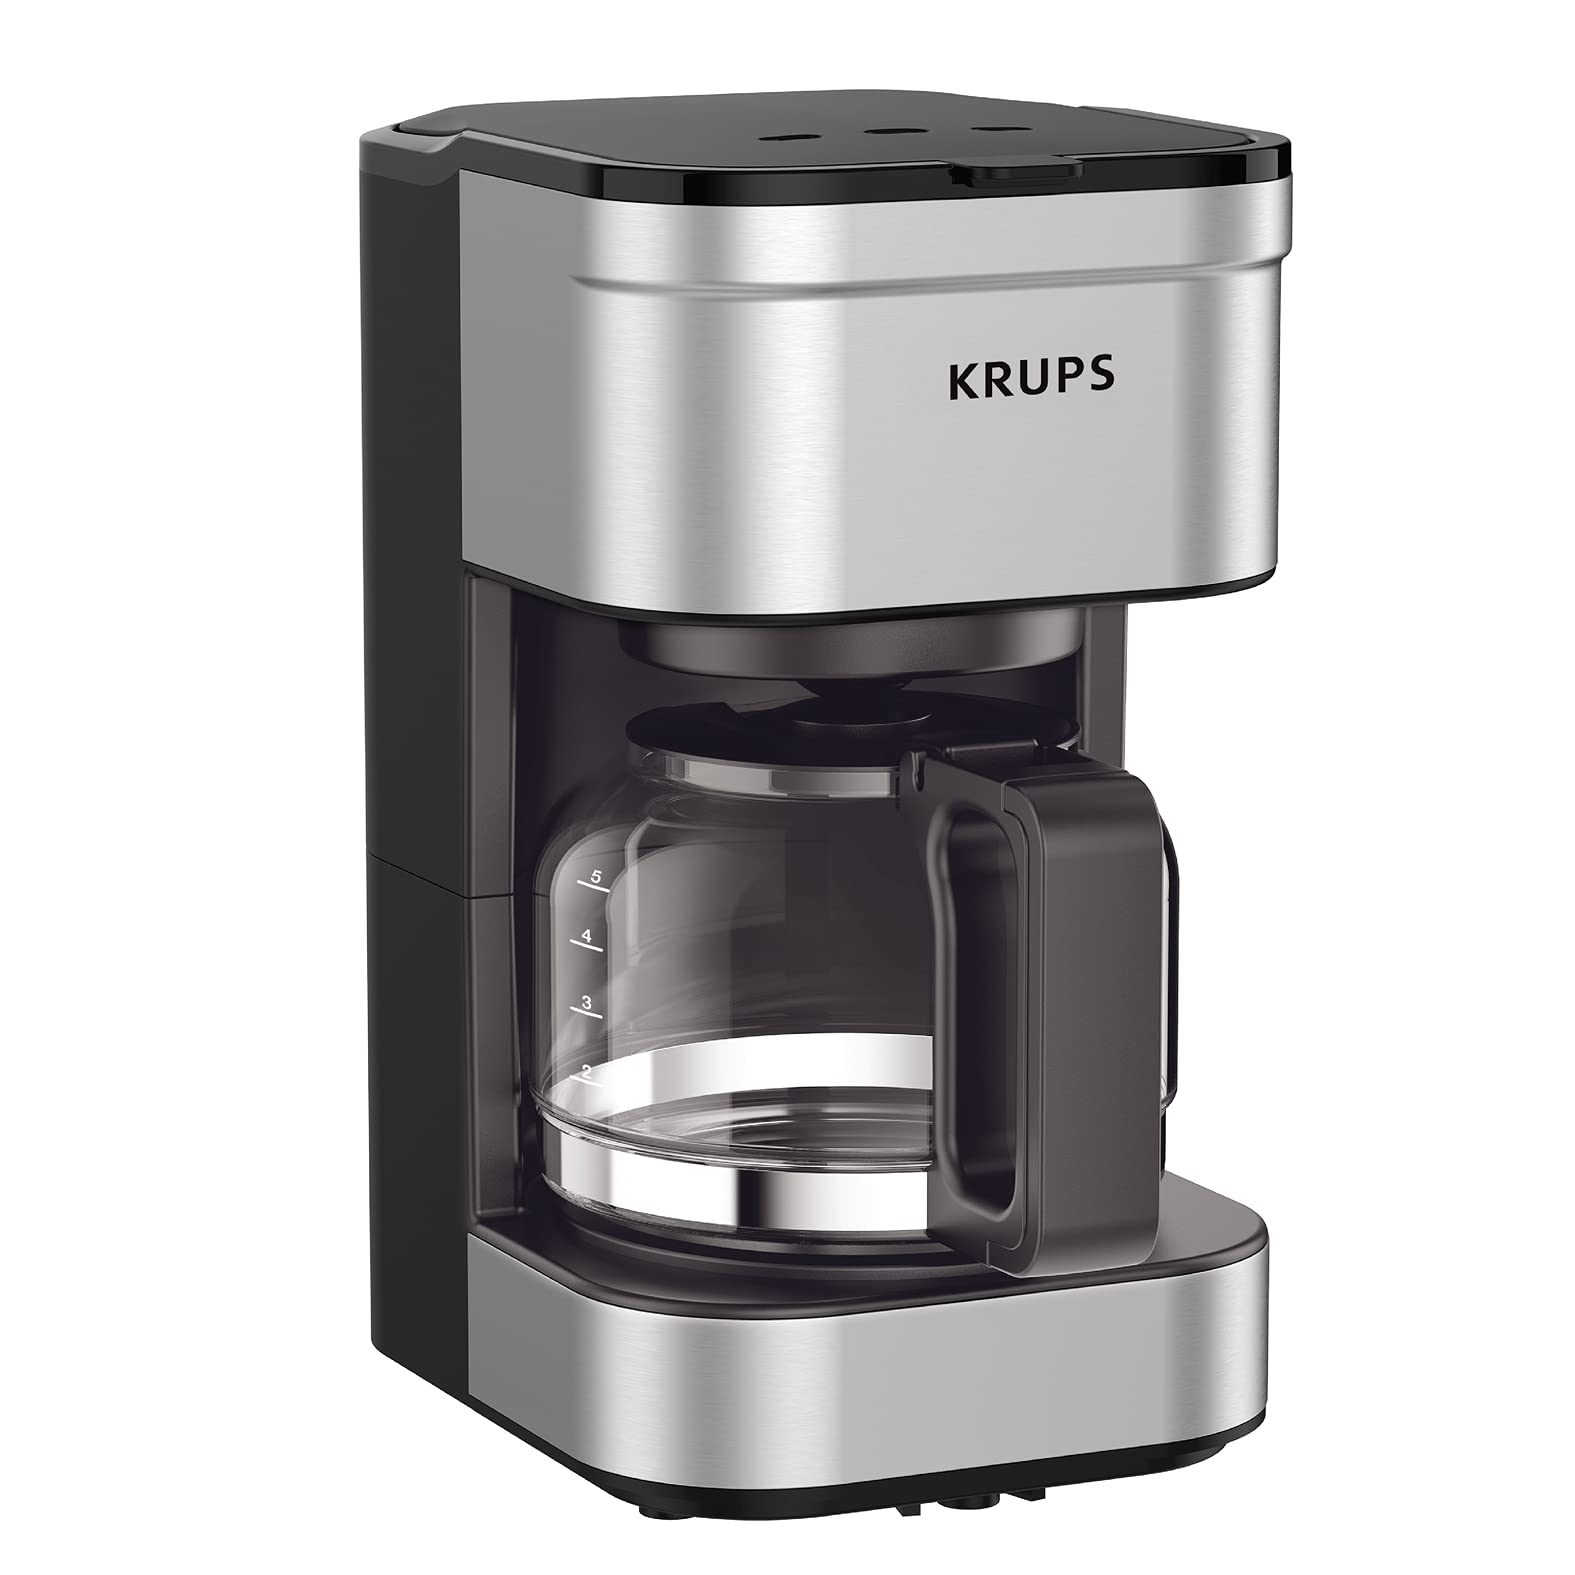 Krups 简单冲泡滴滤式咖啡机